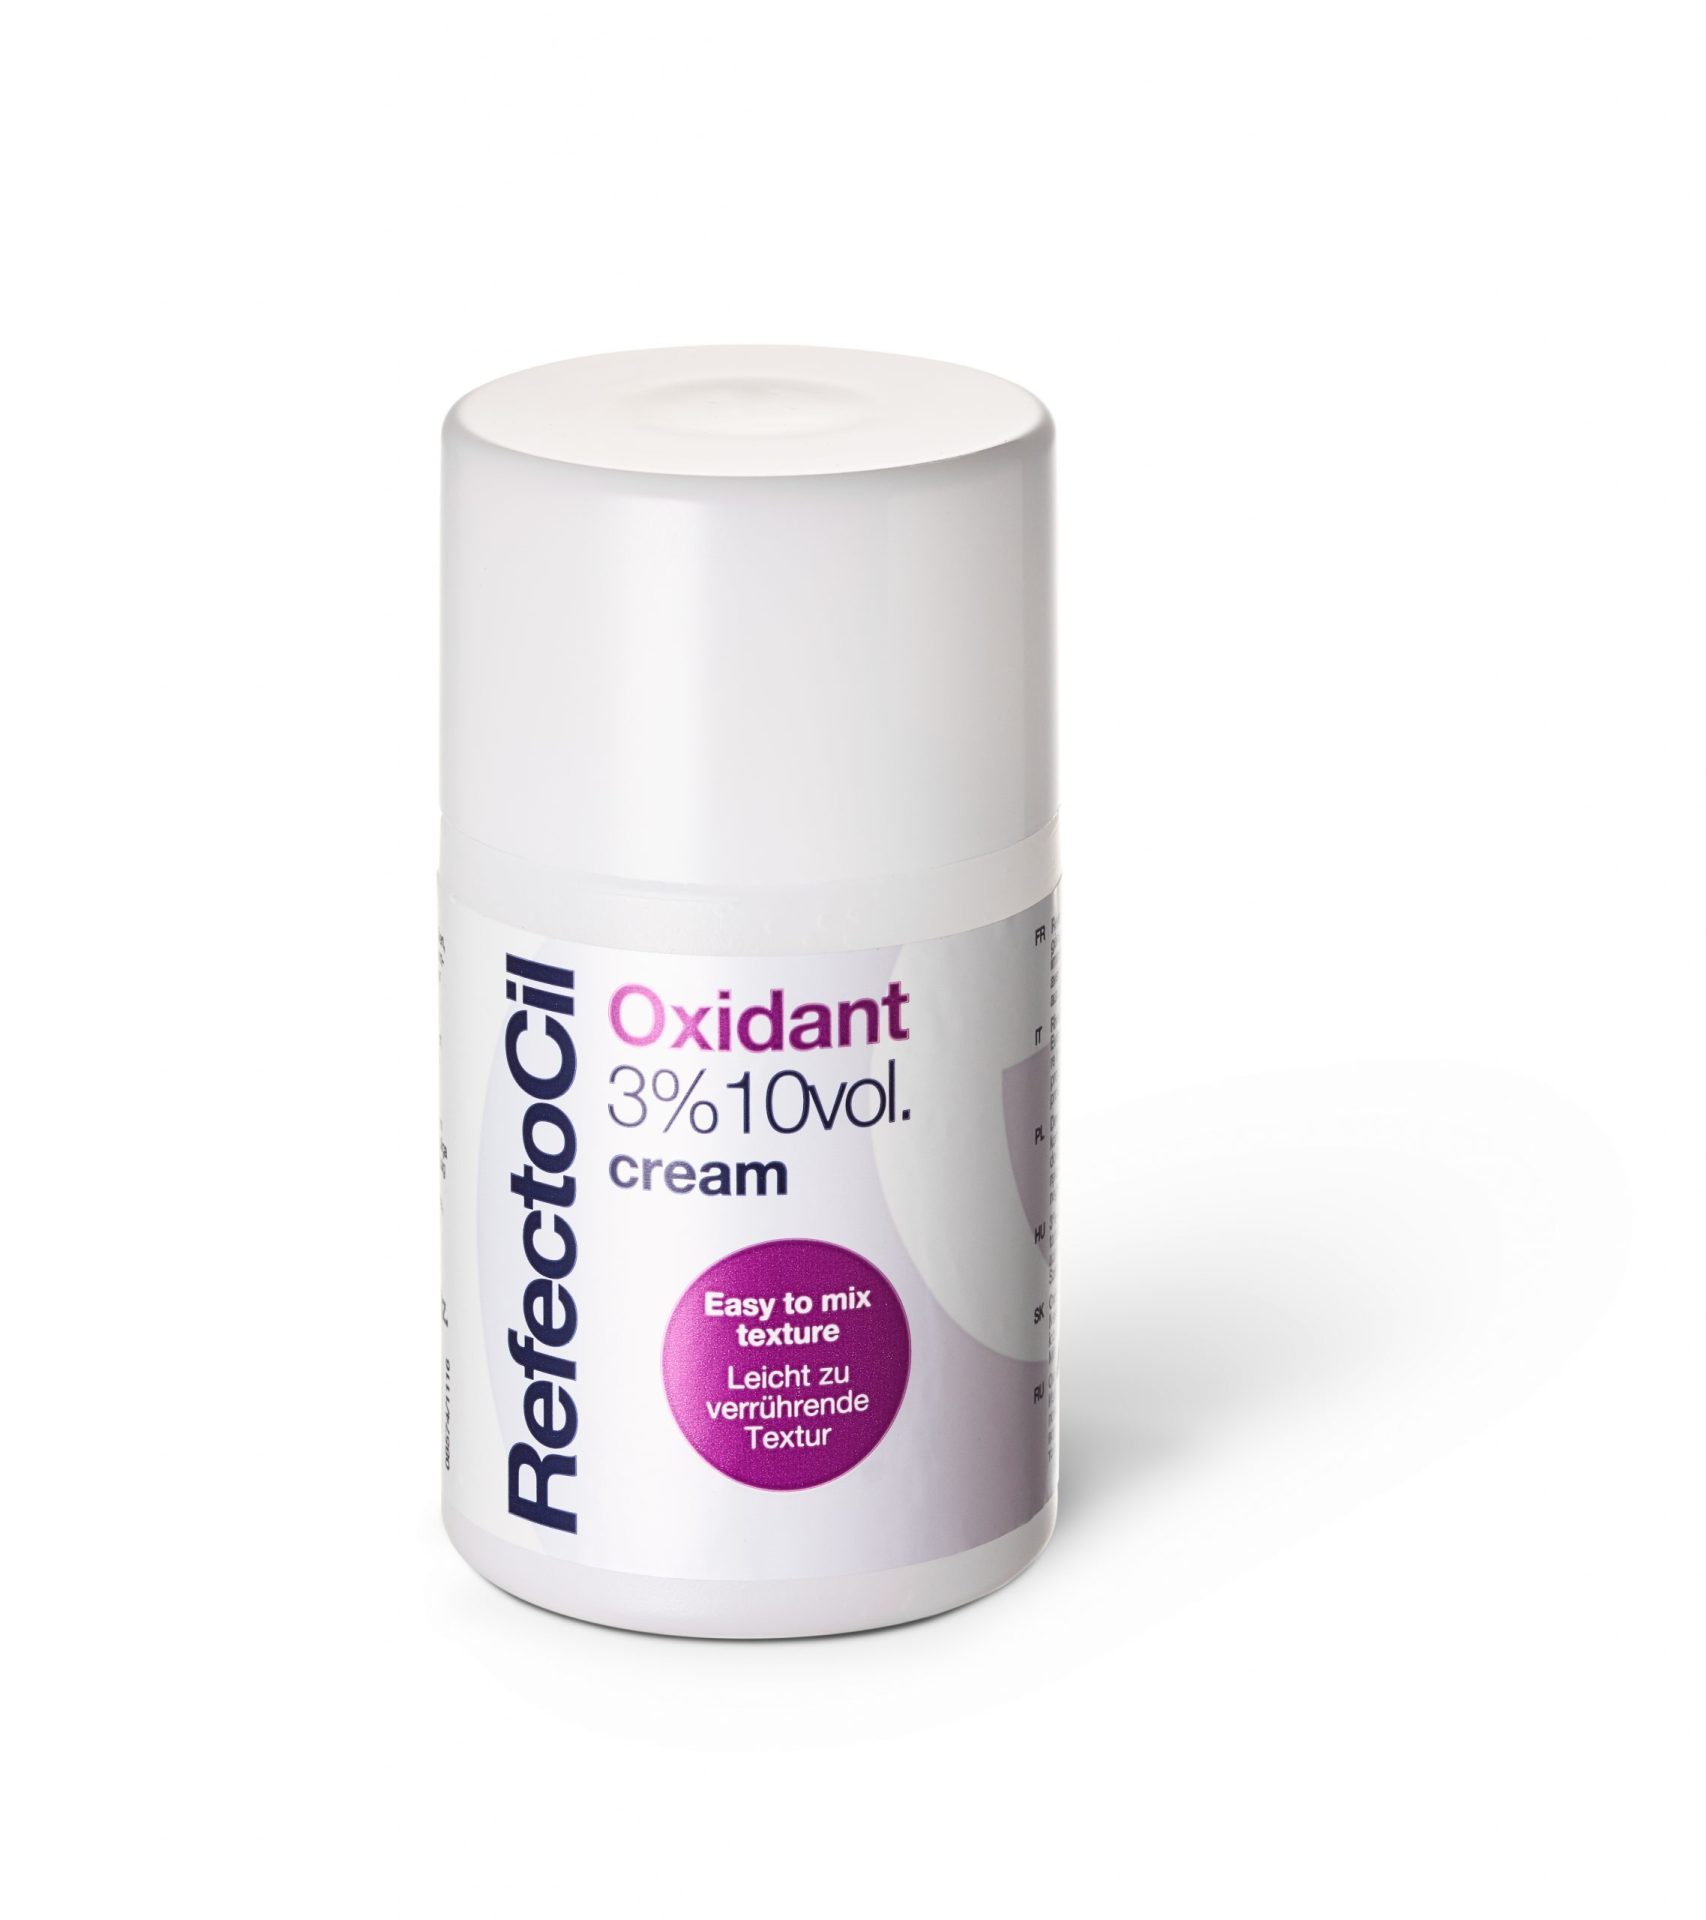 RefectoCil® Oxidant Liquid 3% krémový oxidant (100ml)